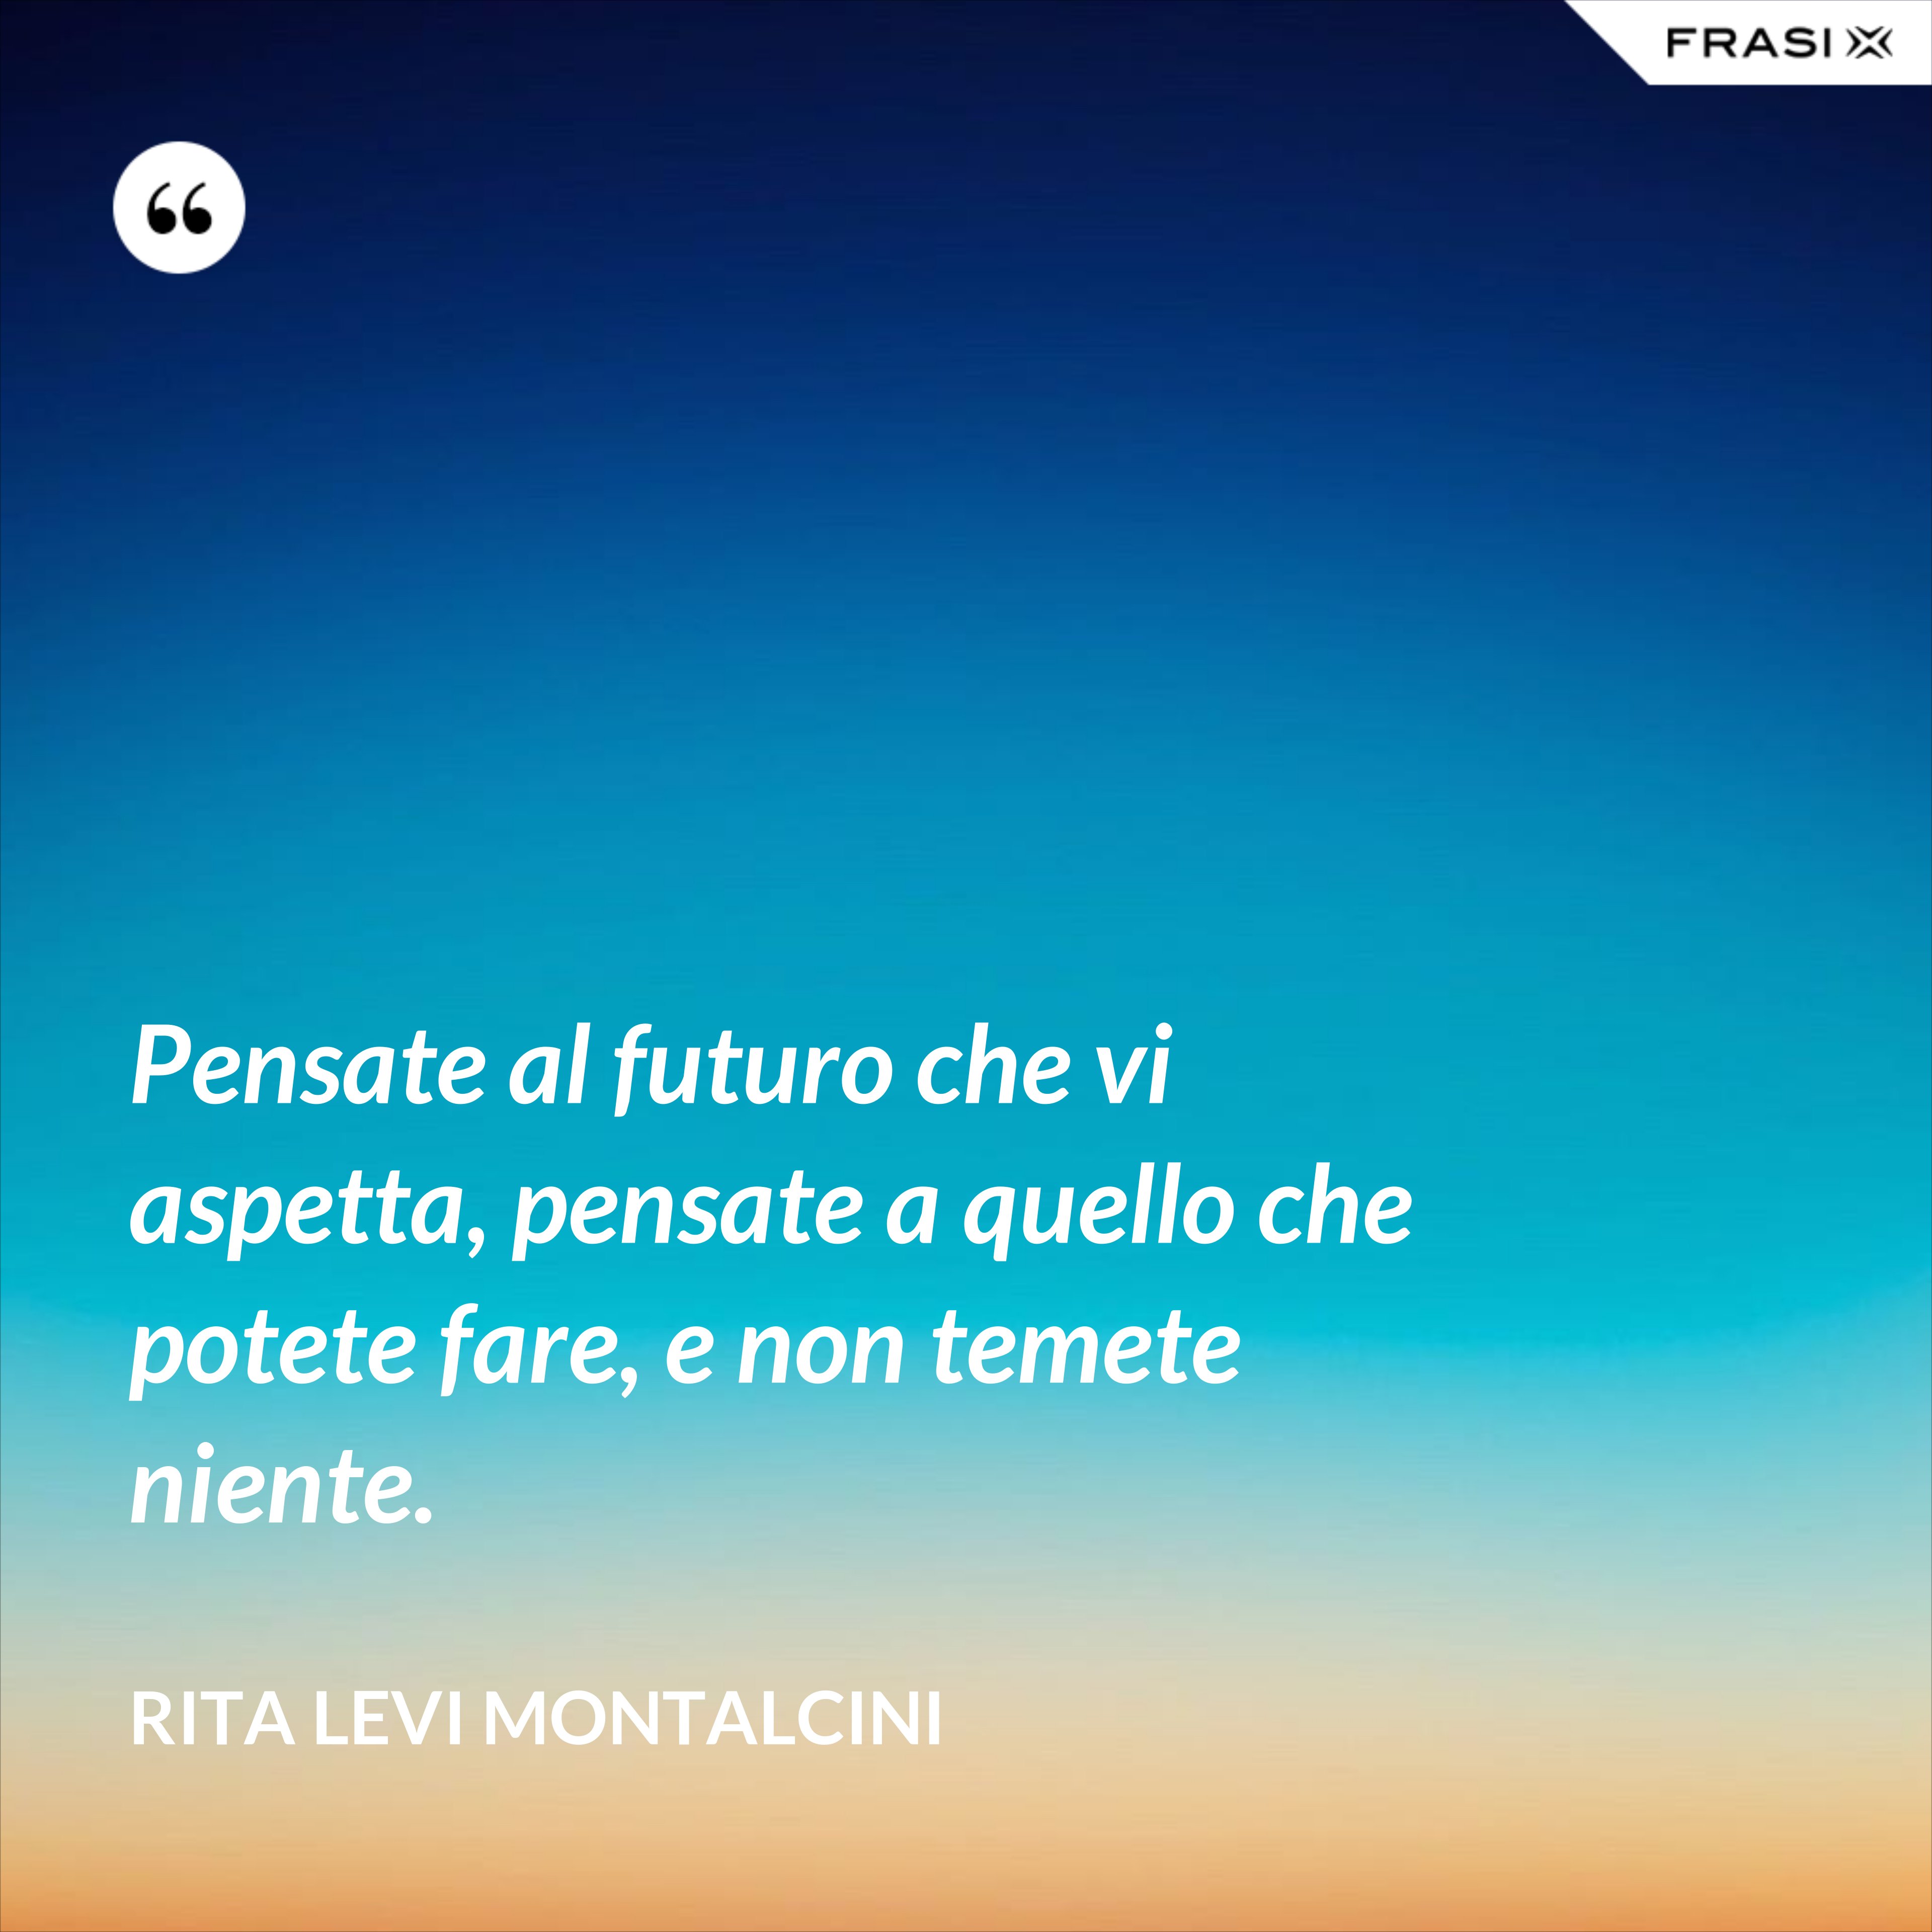 Pensate al futuro che vi aspetta, pensate a quello che potete fare, e non temete niente. - Rita Levi Montalcini